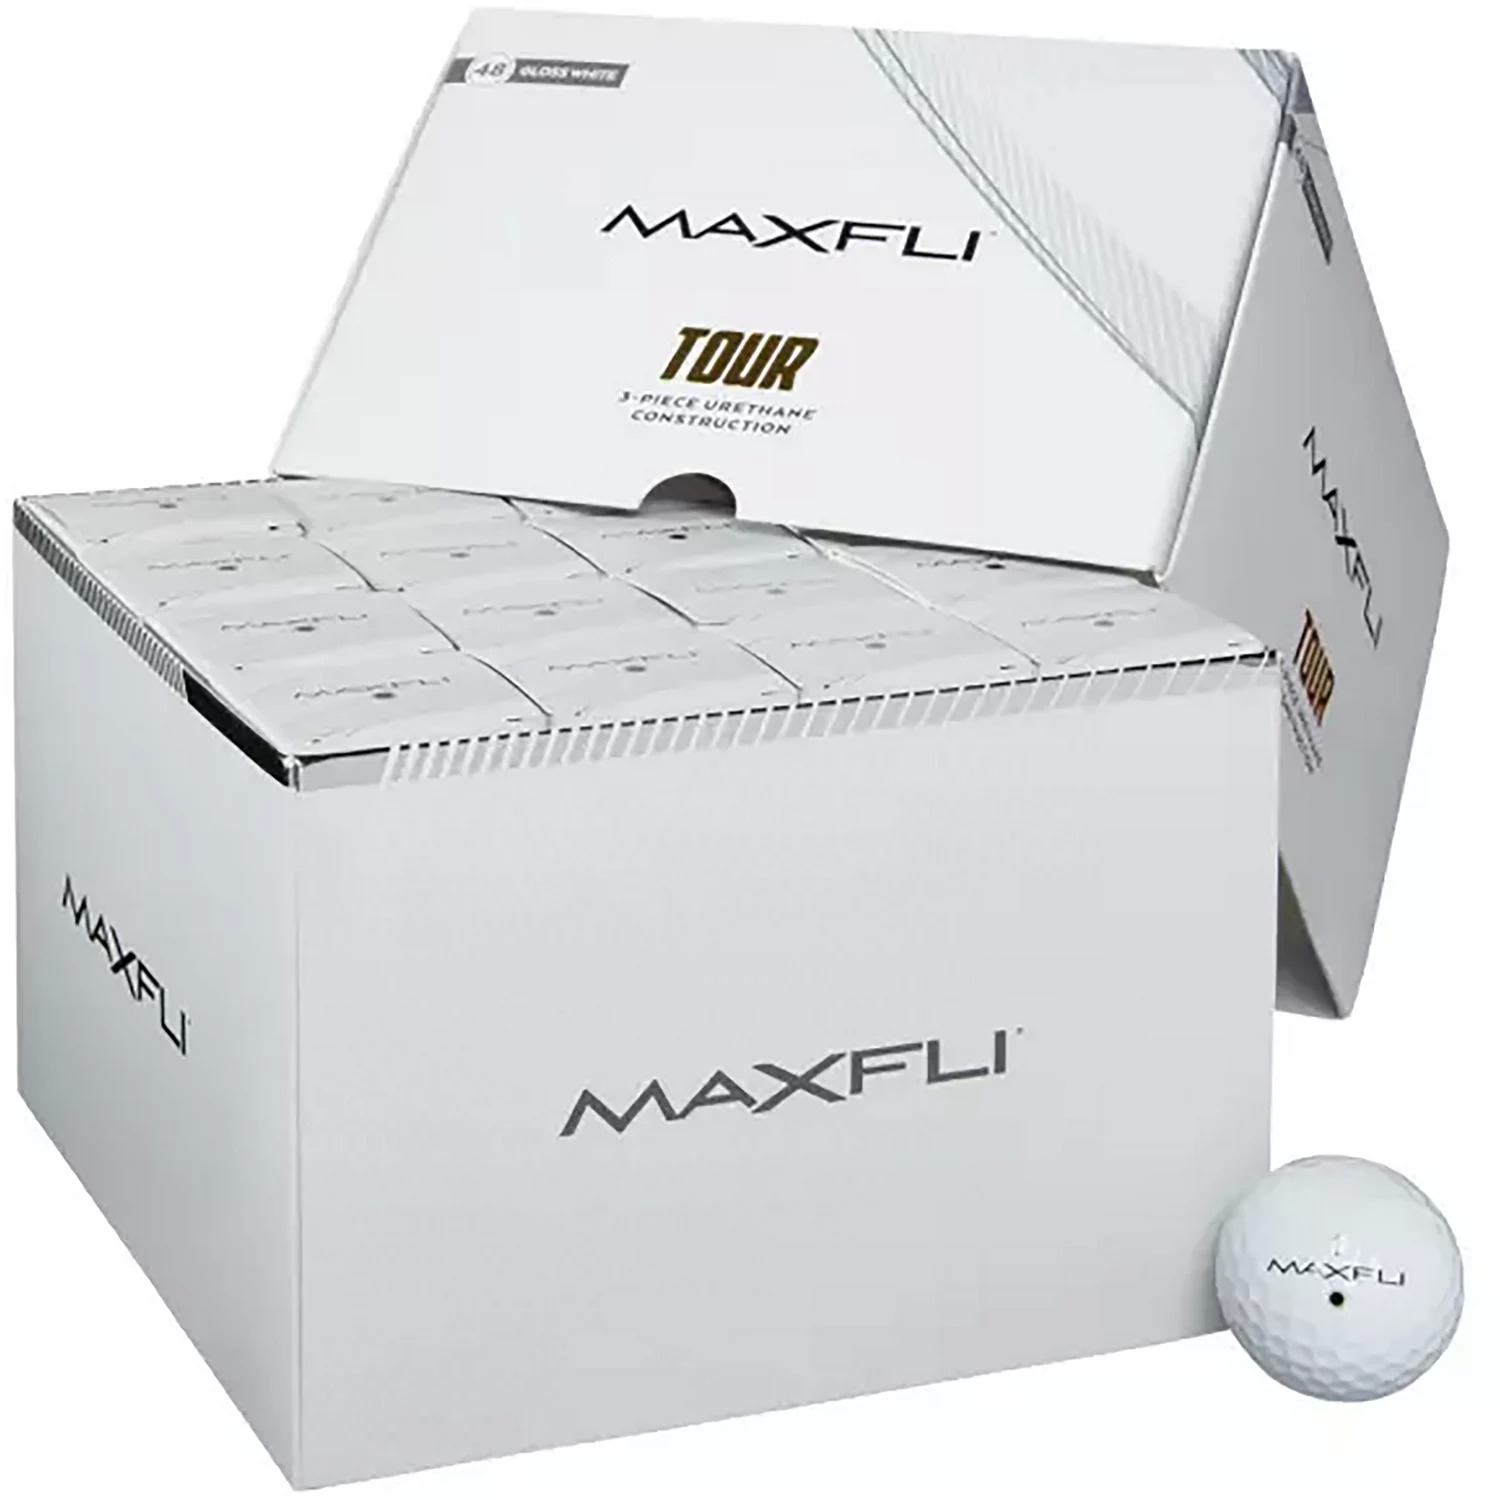 48 Maxfli Tour or Tour X golf balls $89.98